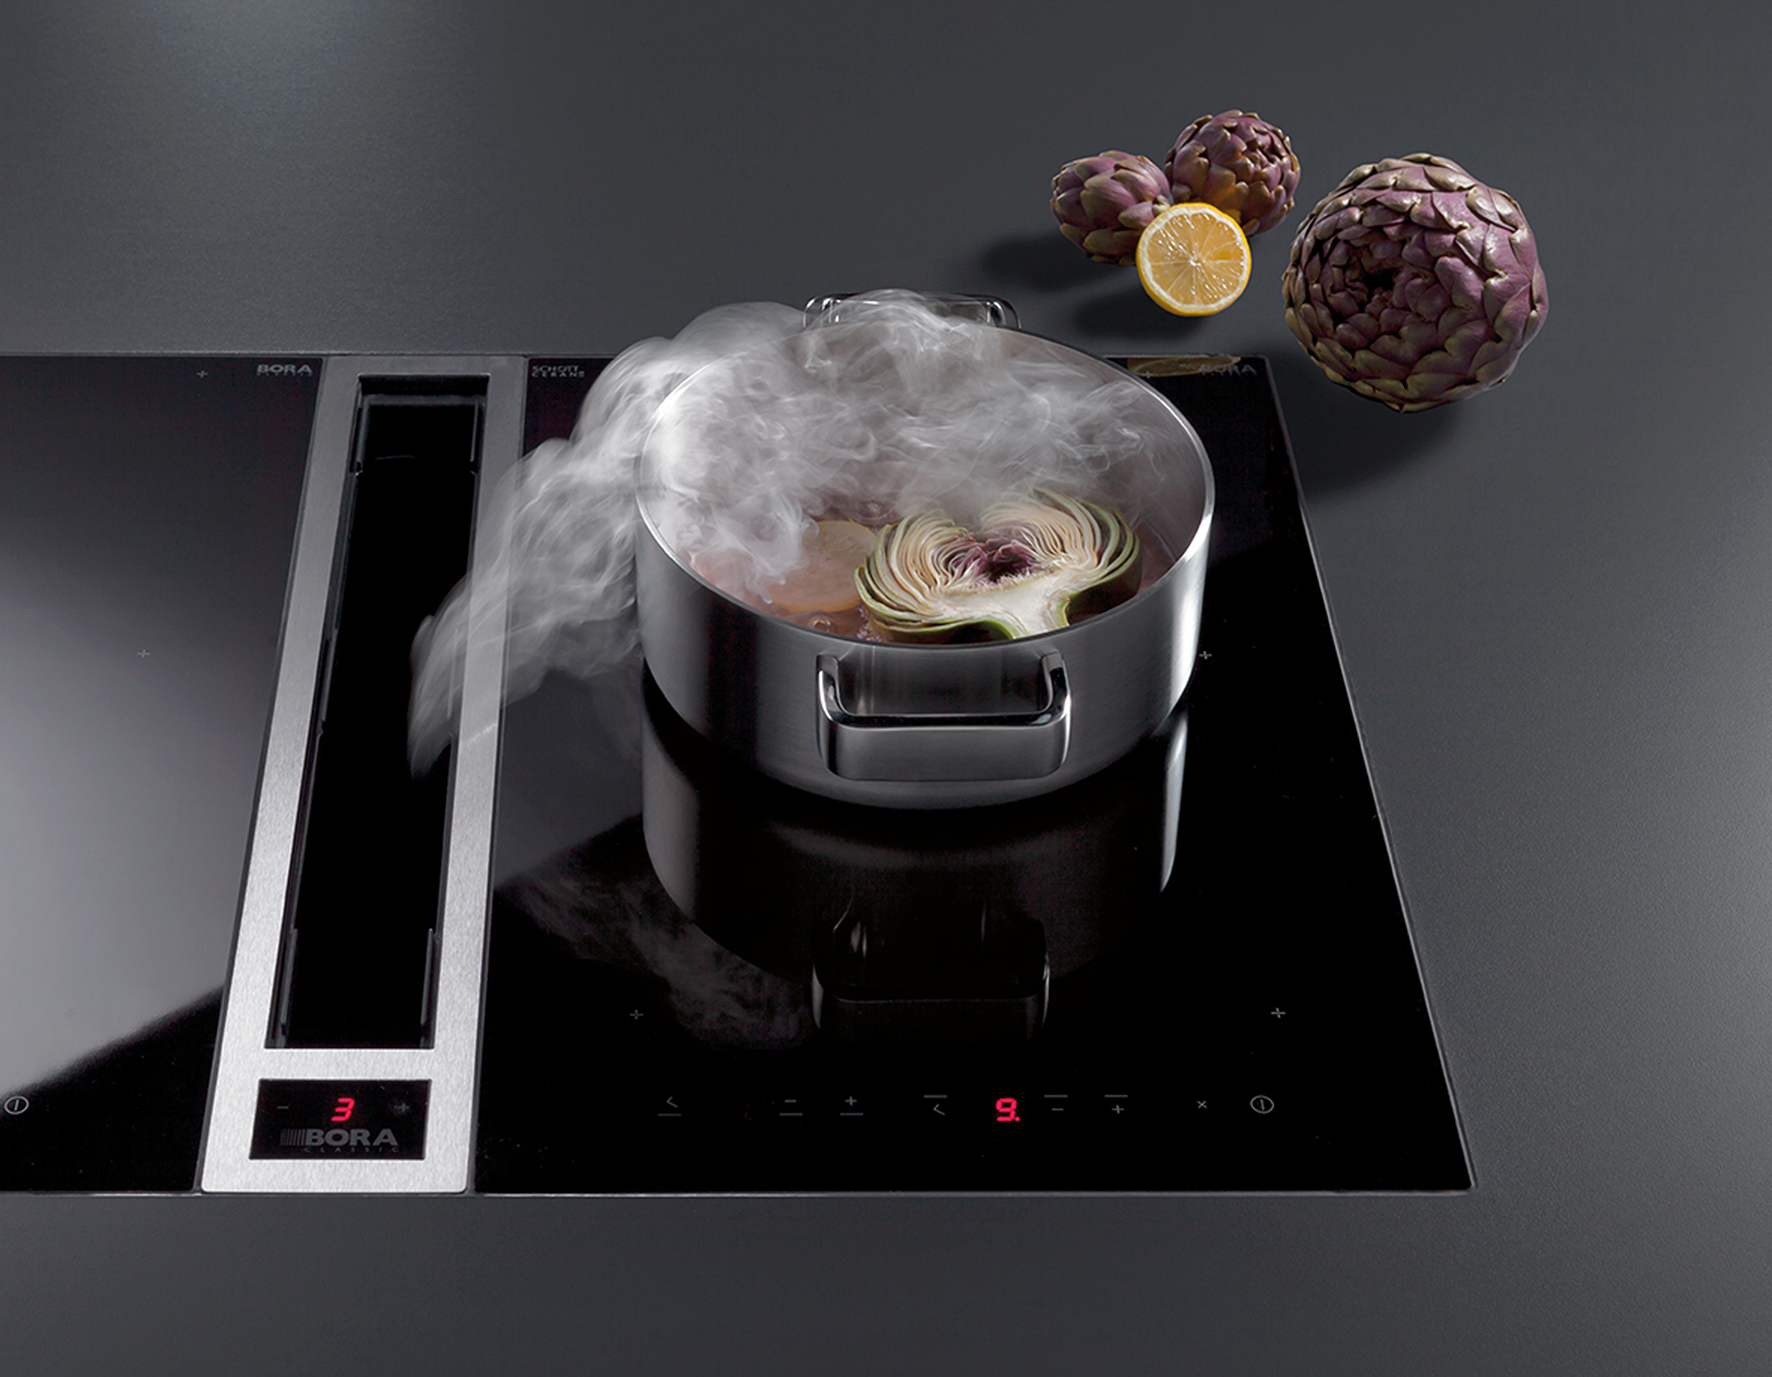 application du système moderne ultra performant haut de gamme pour tables de cuisson bora